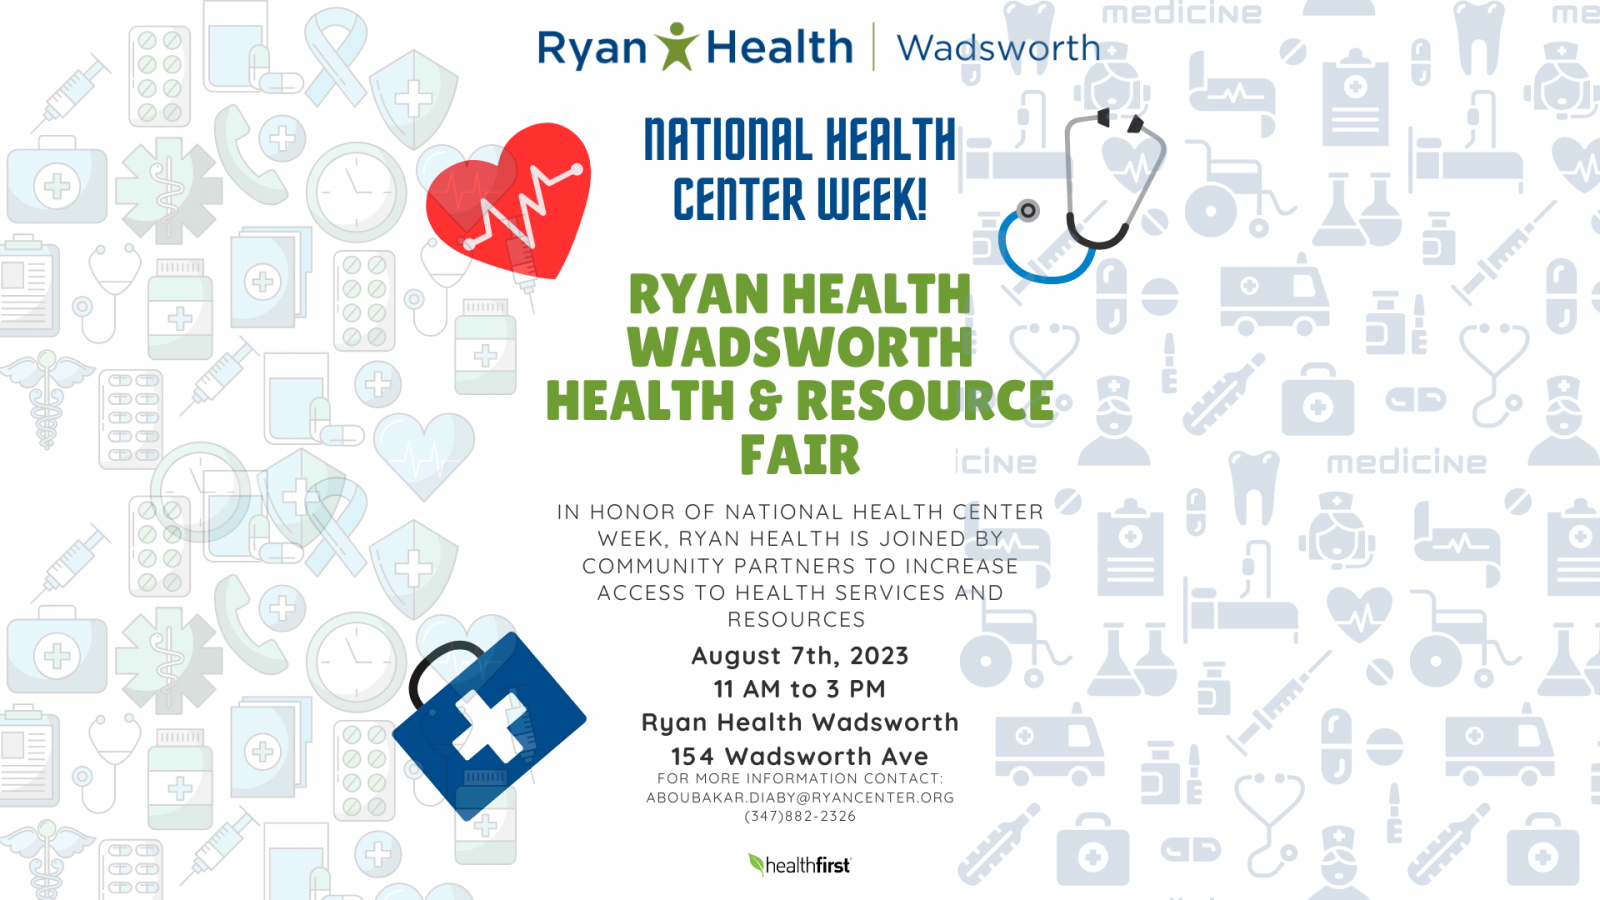 Ryan Health Wadsworth Health Resource Fair Website